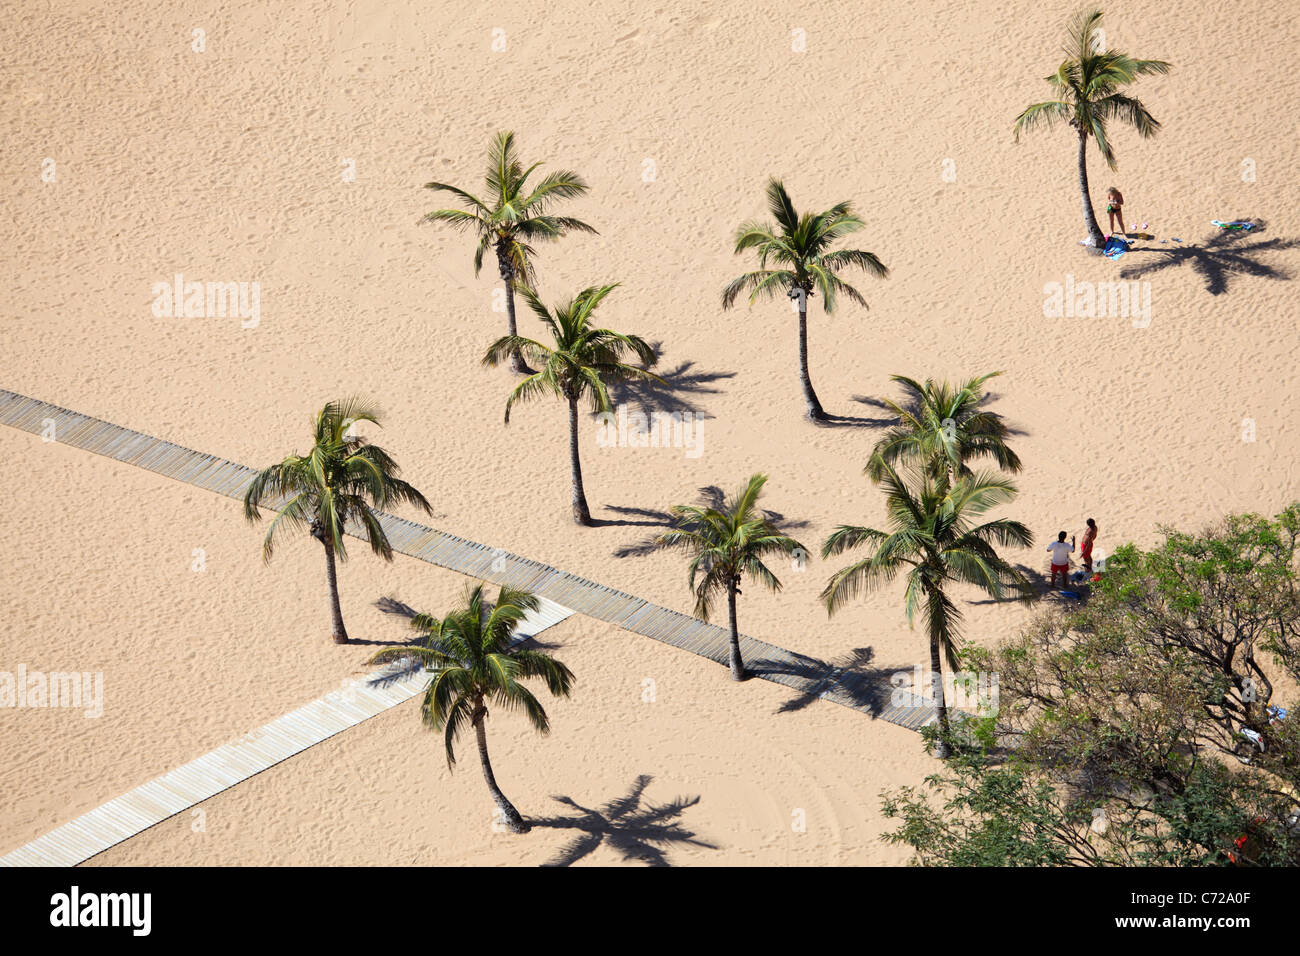 Palm Trees on the beach. Playa de las Teresitas, Tenerife Spain Stock Photo